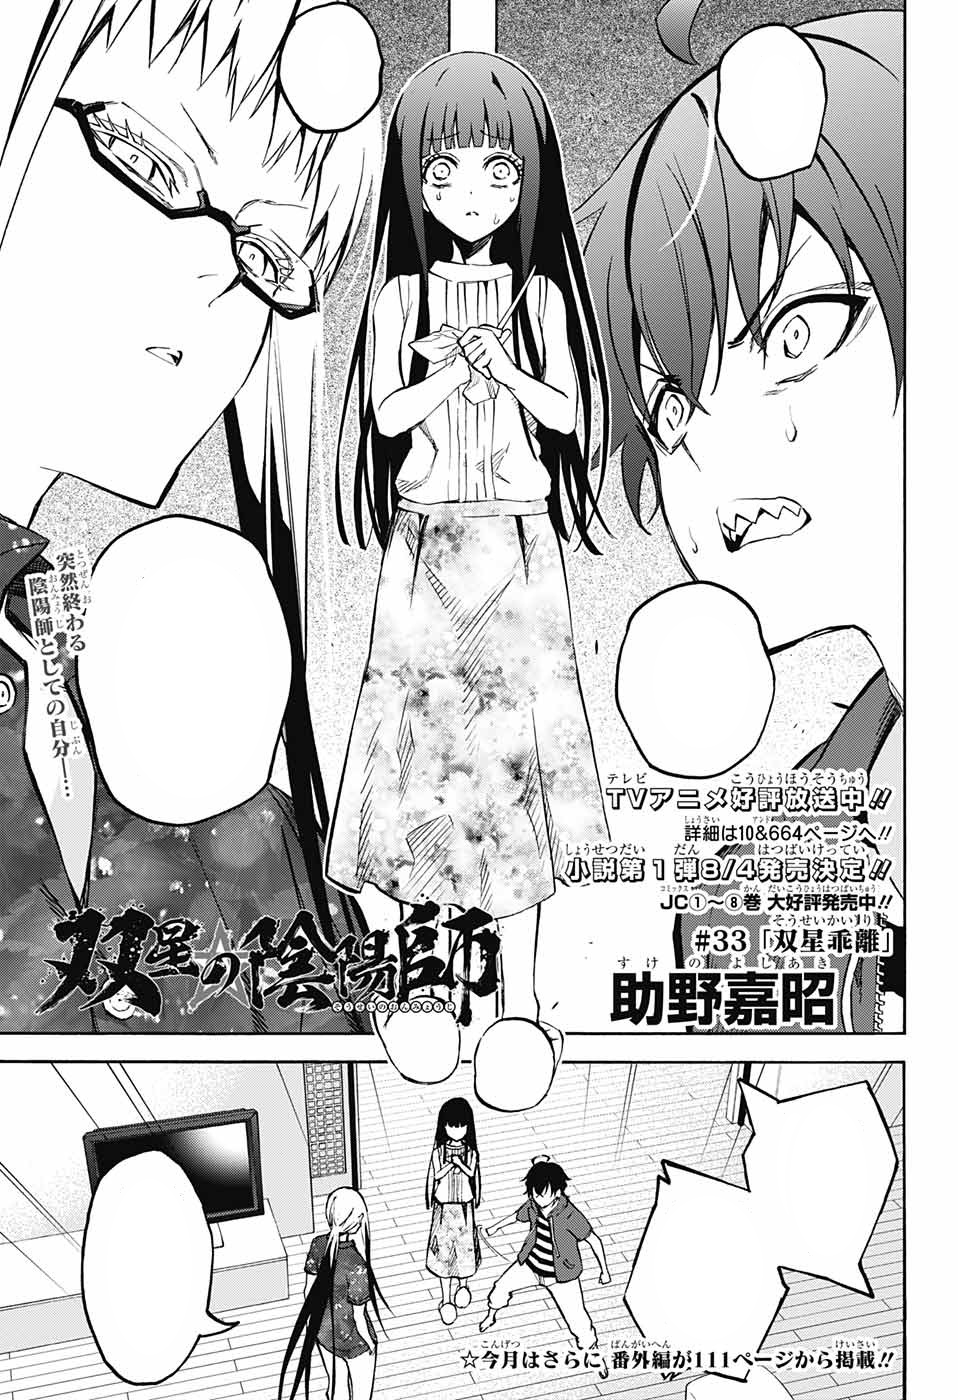 Chapter 23, Sousei no Onmyouji - Twin Star Exorcists Wikia